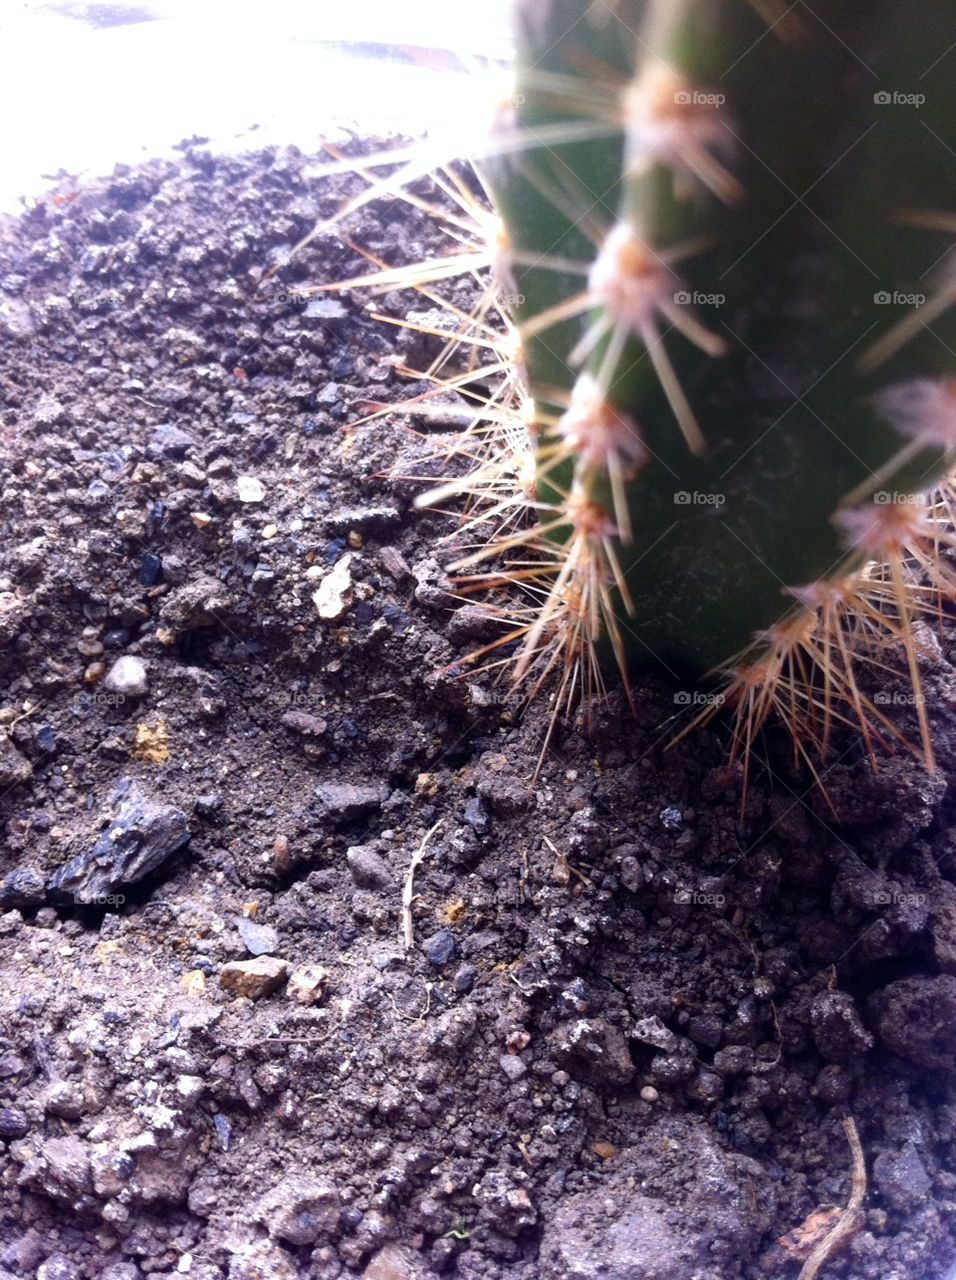 Cactus Soil